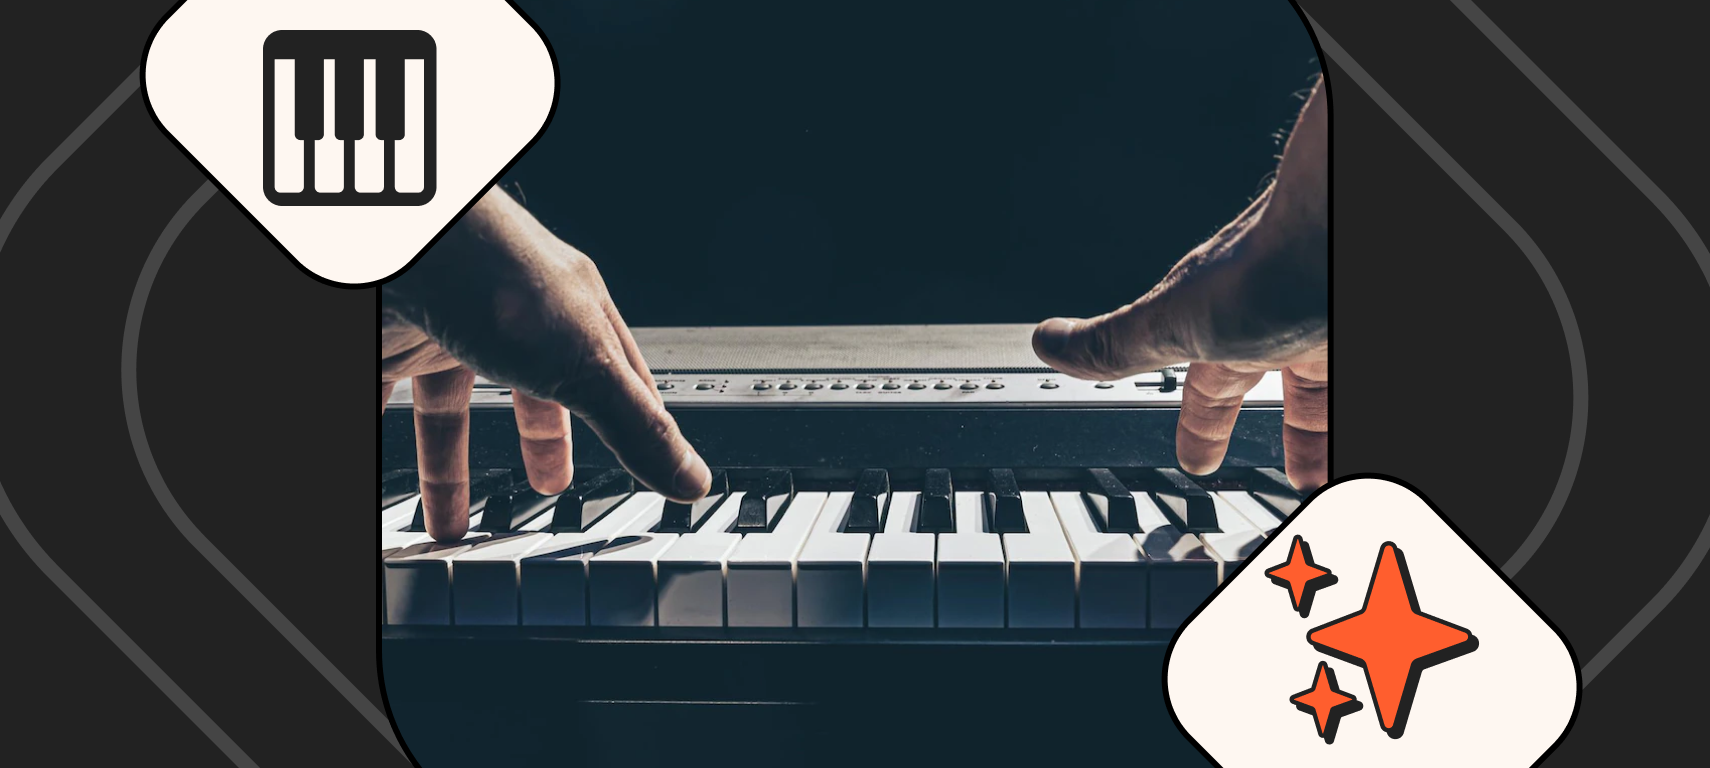 Conoce los principales tipos de teclados musicales | Blog Club